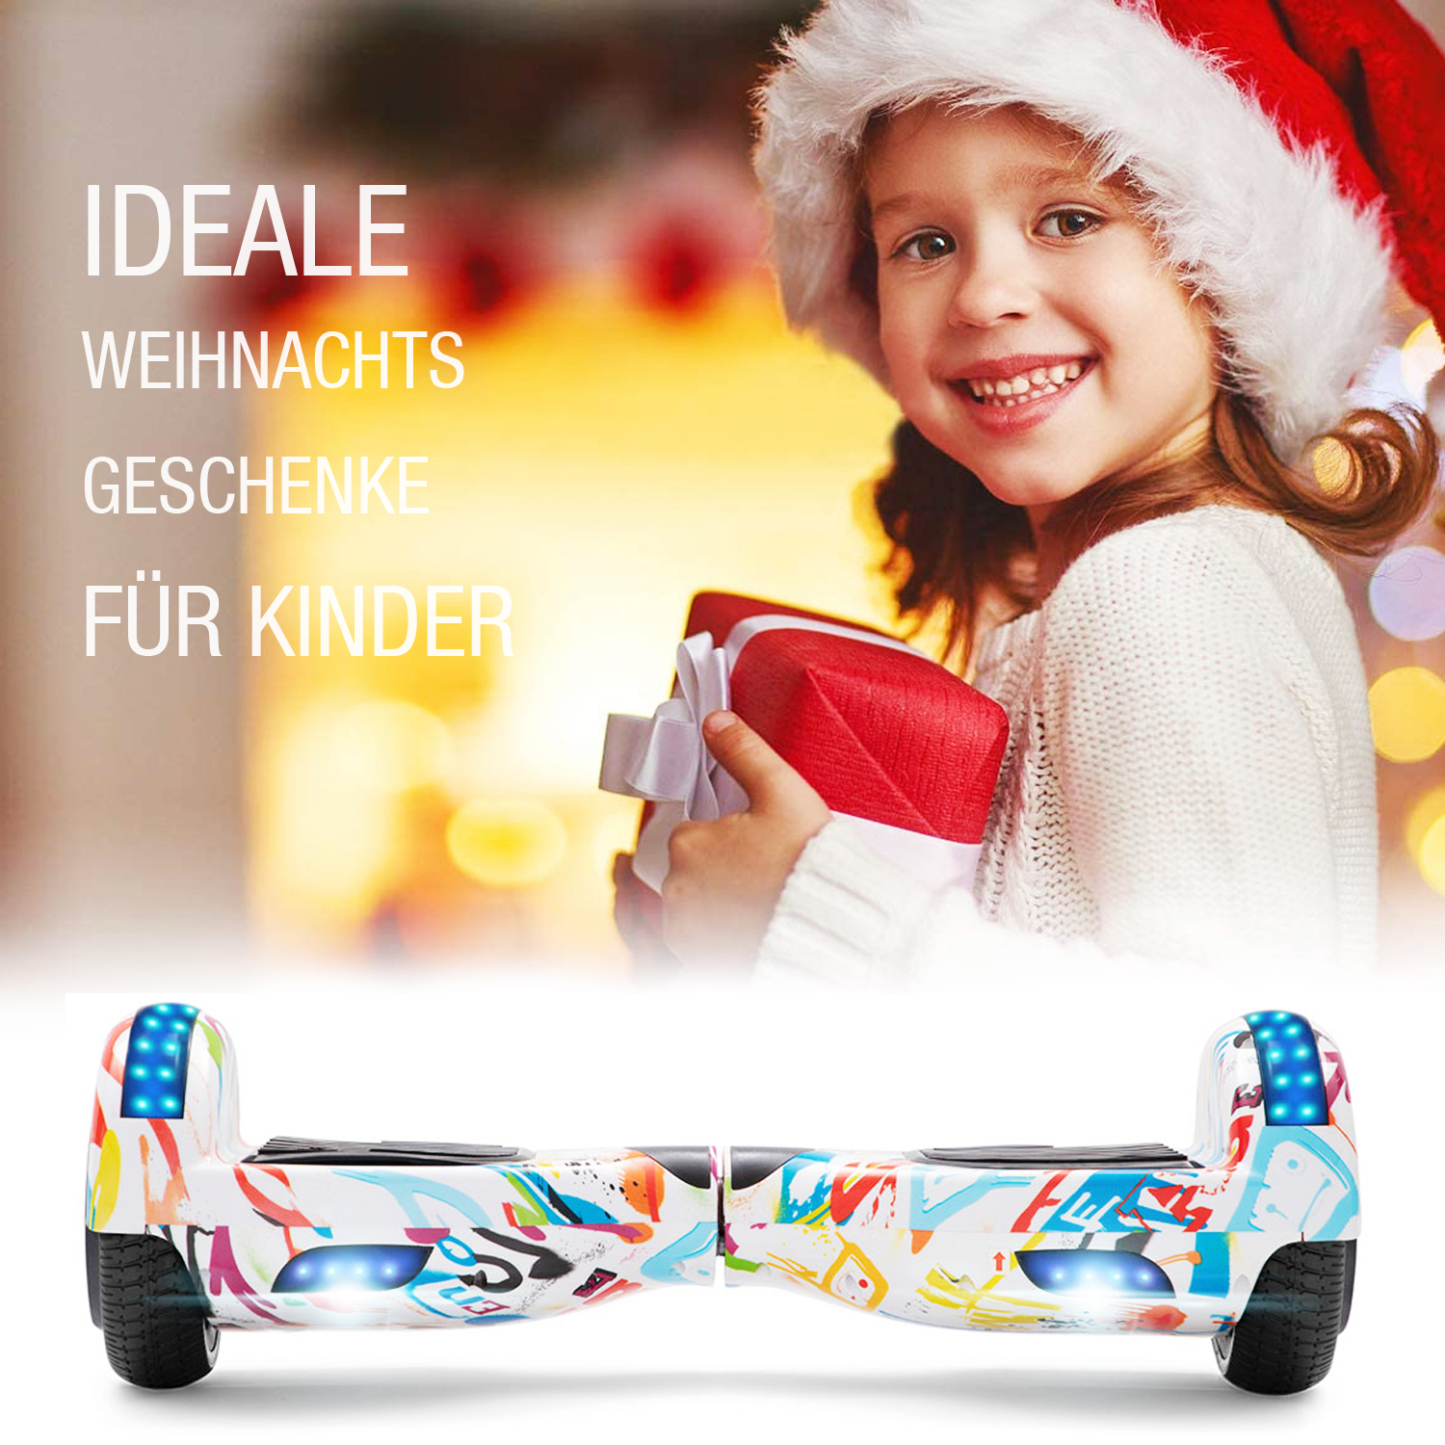 Neues 6,5" weiße Graffiti Hoverboard für Kinder, mit Bluetooth Musik Lautsprecher und Disco LED Licht - 500W 12km/h